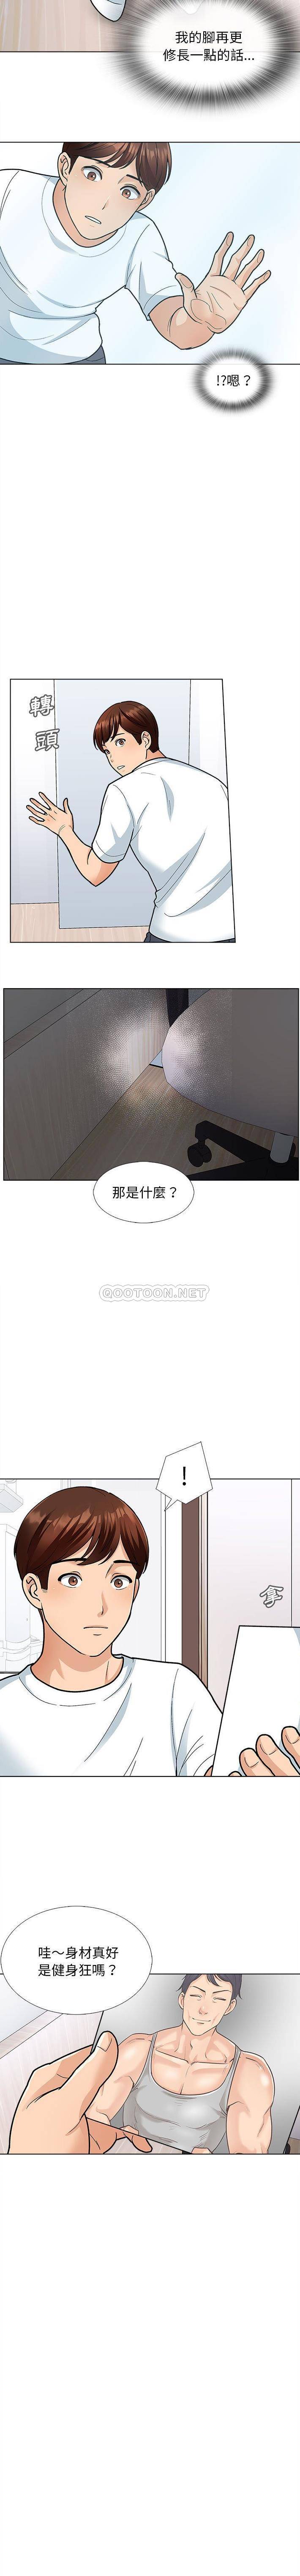 韩国污漫画 幸福公寓 第12话 6